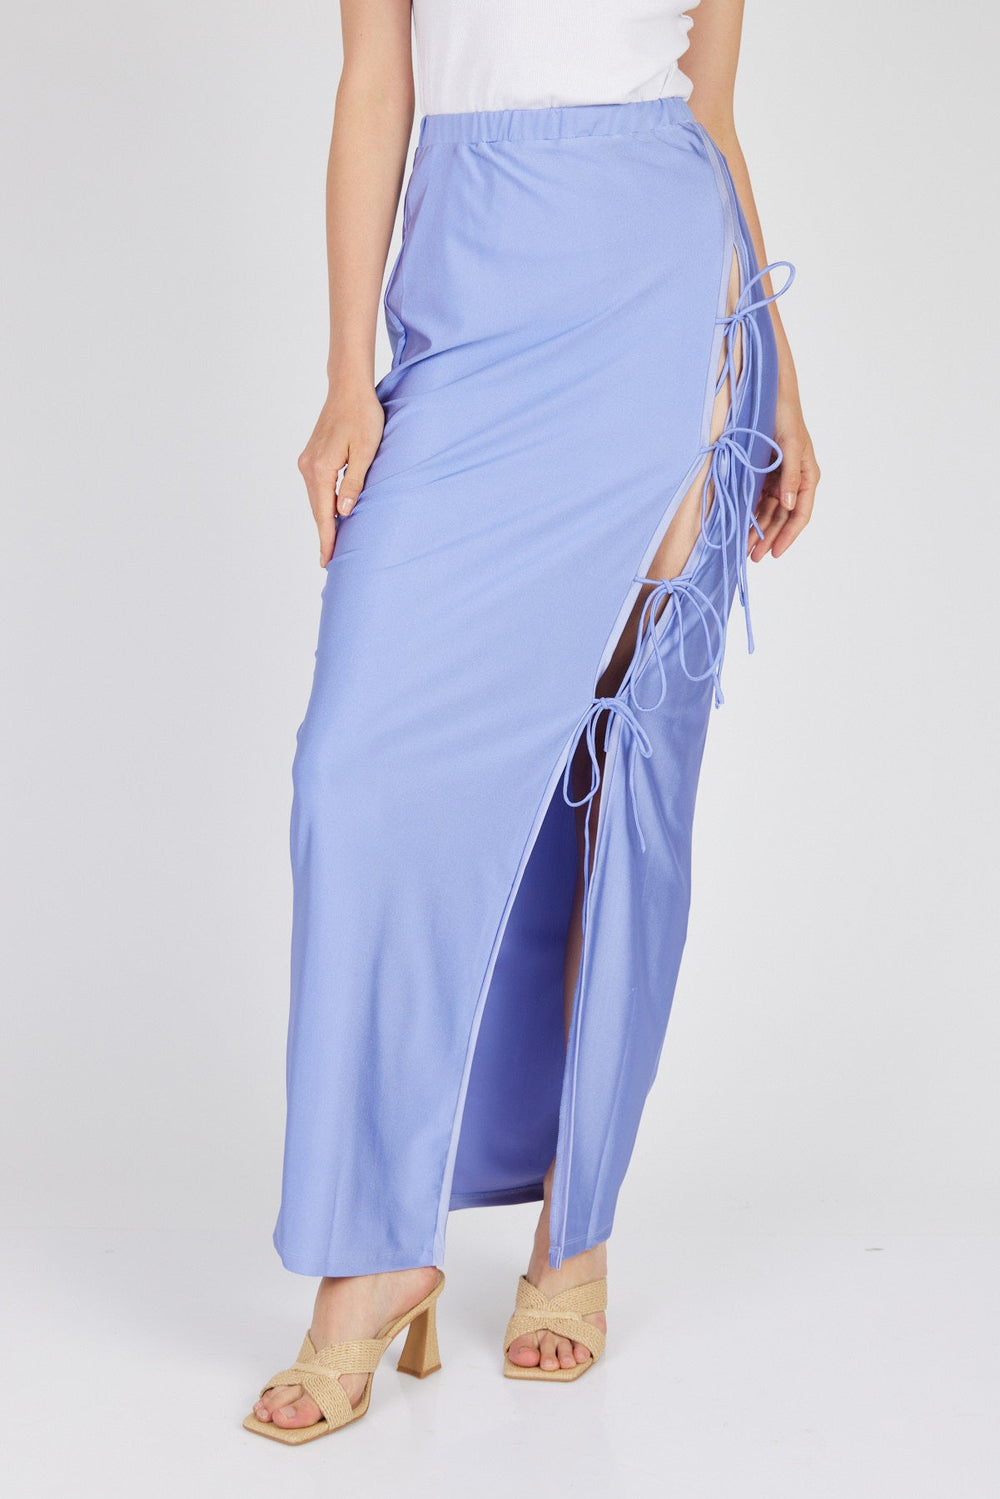 חצאית מקסי דפנה בצבע לוונדר - Mother Ofall